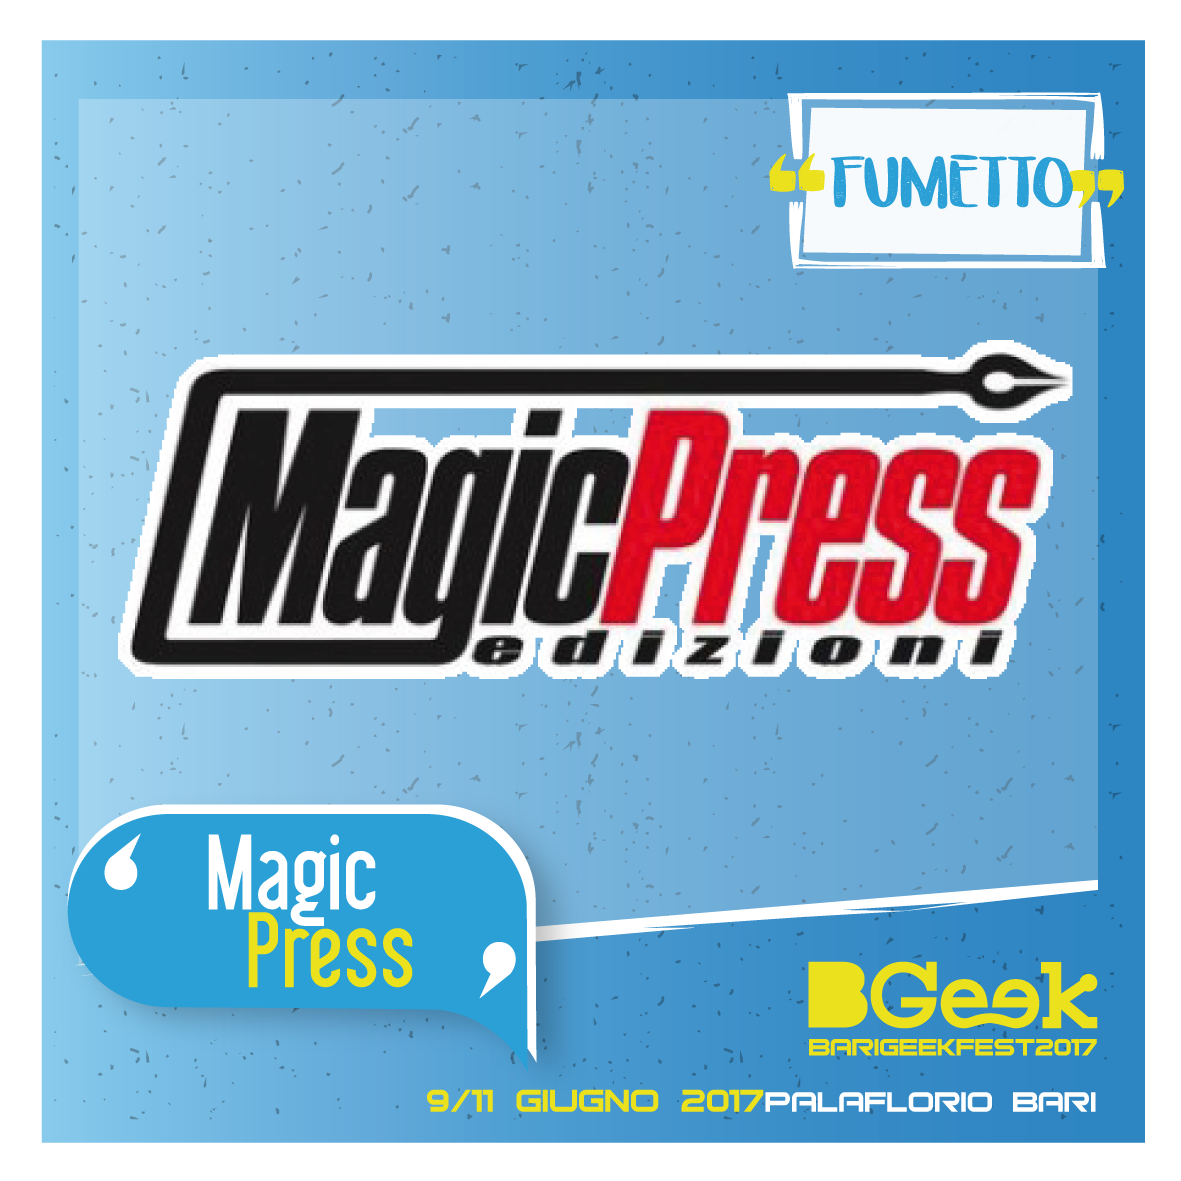 Magic Press Edizioni